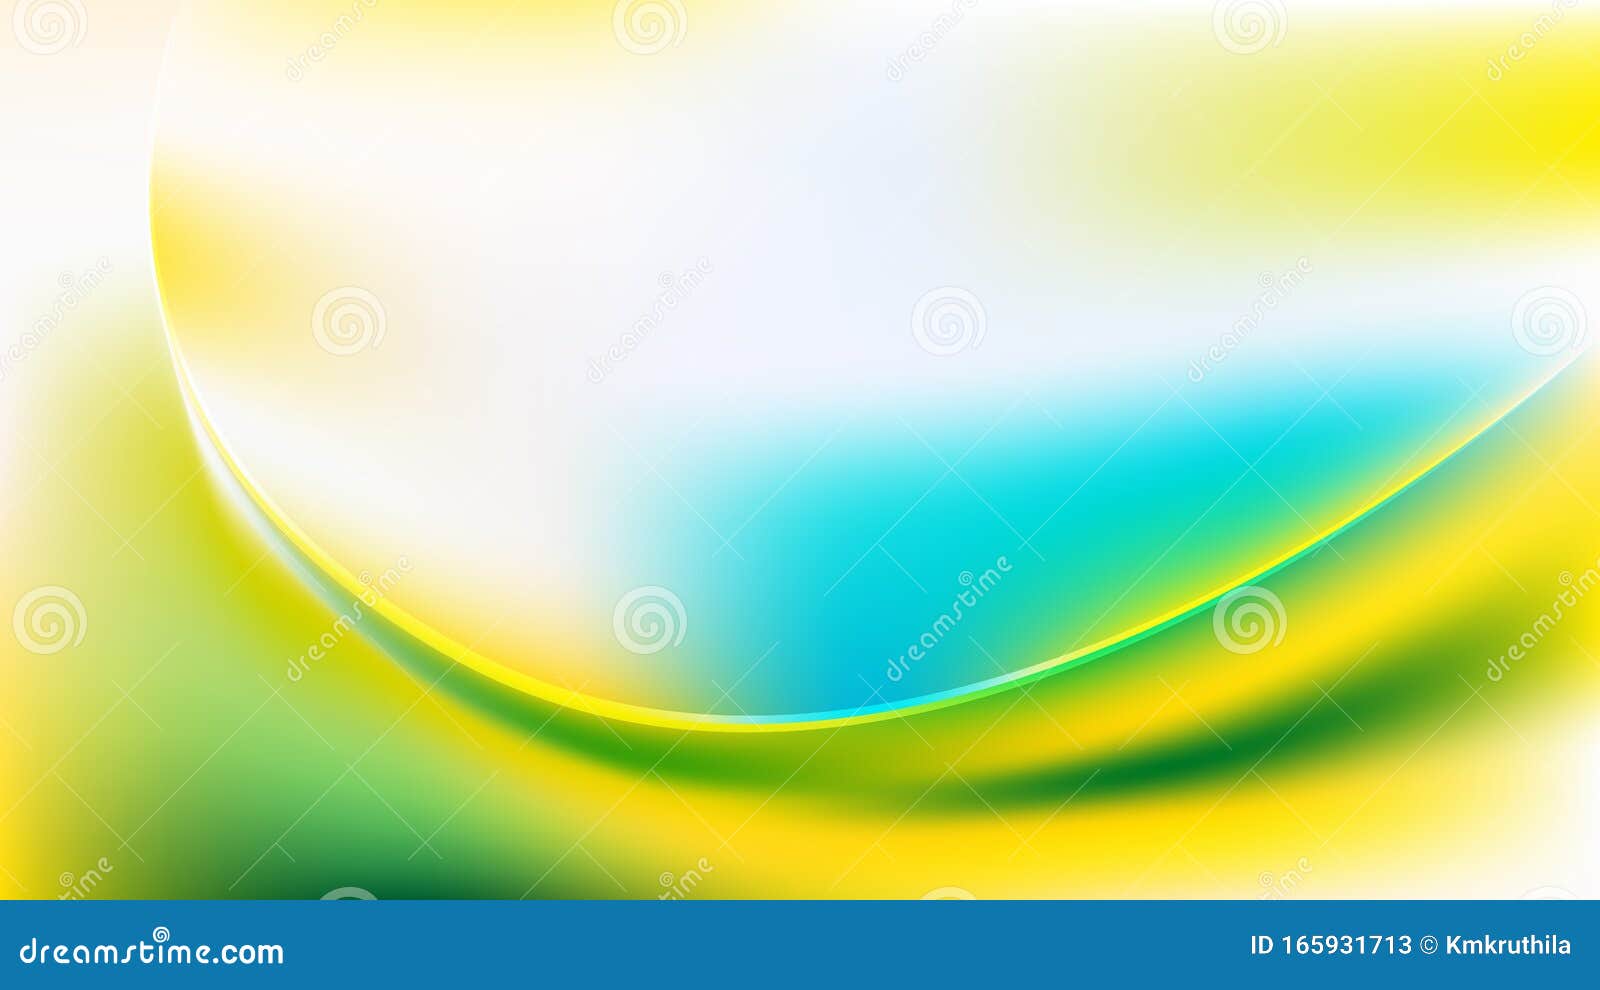 Mẫu nền sóng trừu tượng màu xanh dương xanh lá vàng là một cách tuyệt vời để thể hiện sự tươi mới và năng động trên màn hình điện thoại của bạn. Hãy khám phá sự độc đáo và hiệu quả của hình nền này và mang đến sự ấn tượng mạnh mẽ đến cho người dùng.